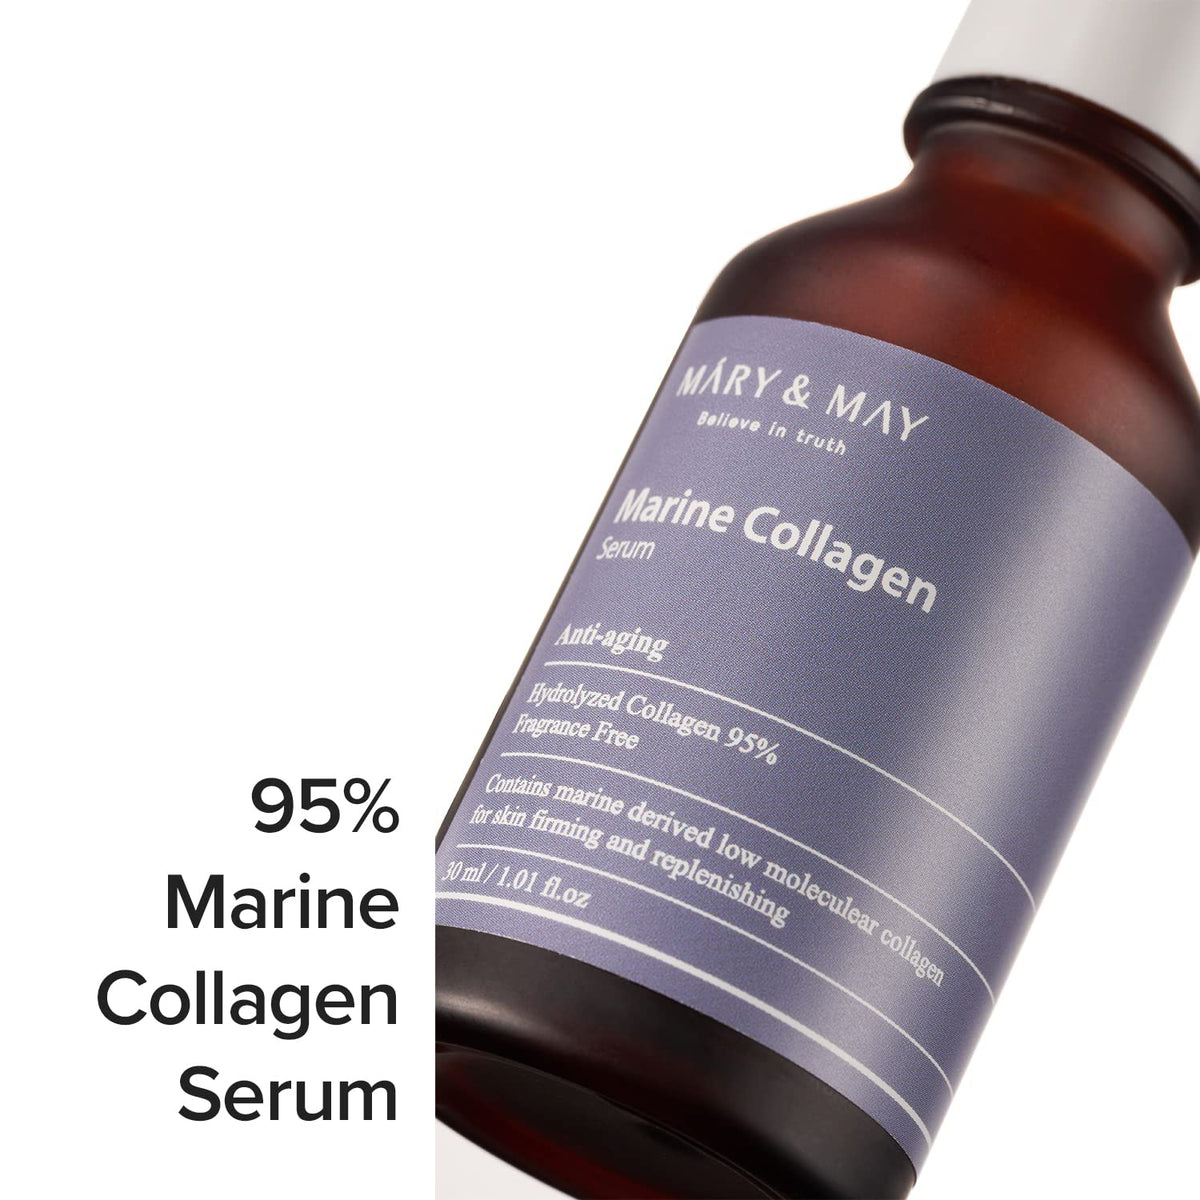 Mary & May - Marine Collagen Serum 30ml